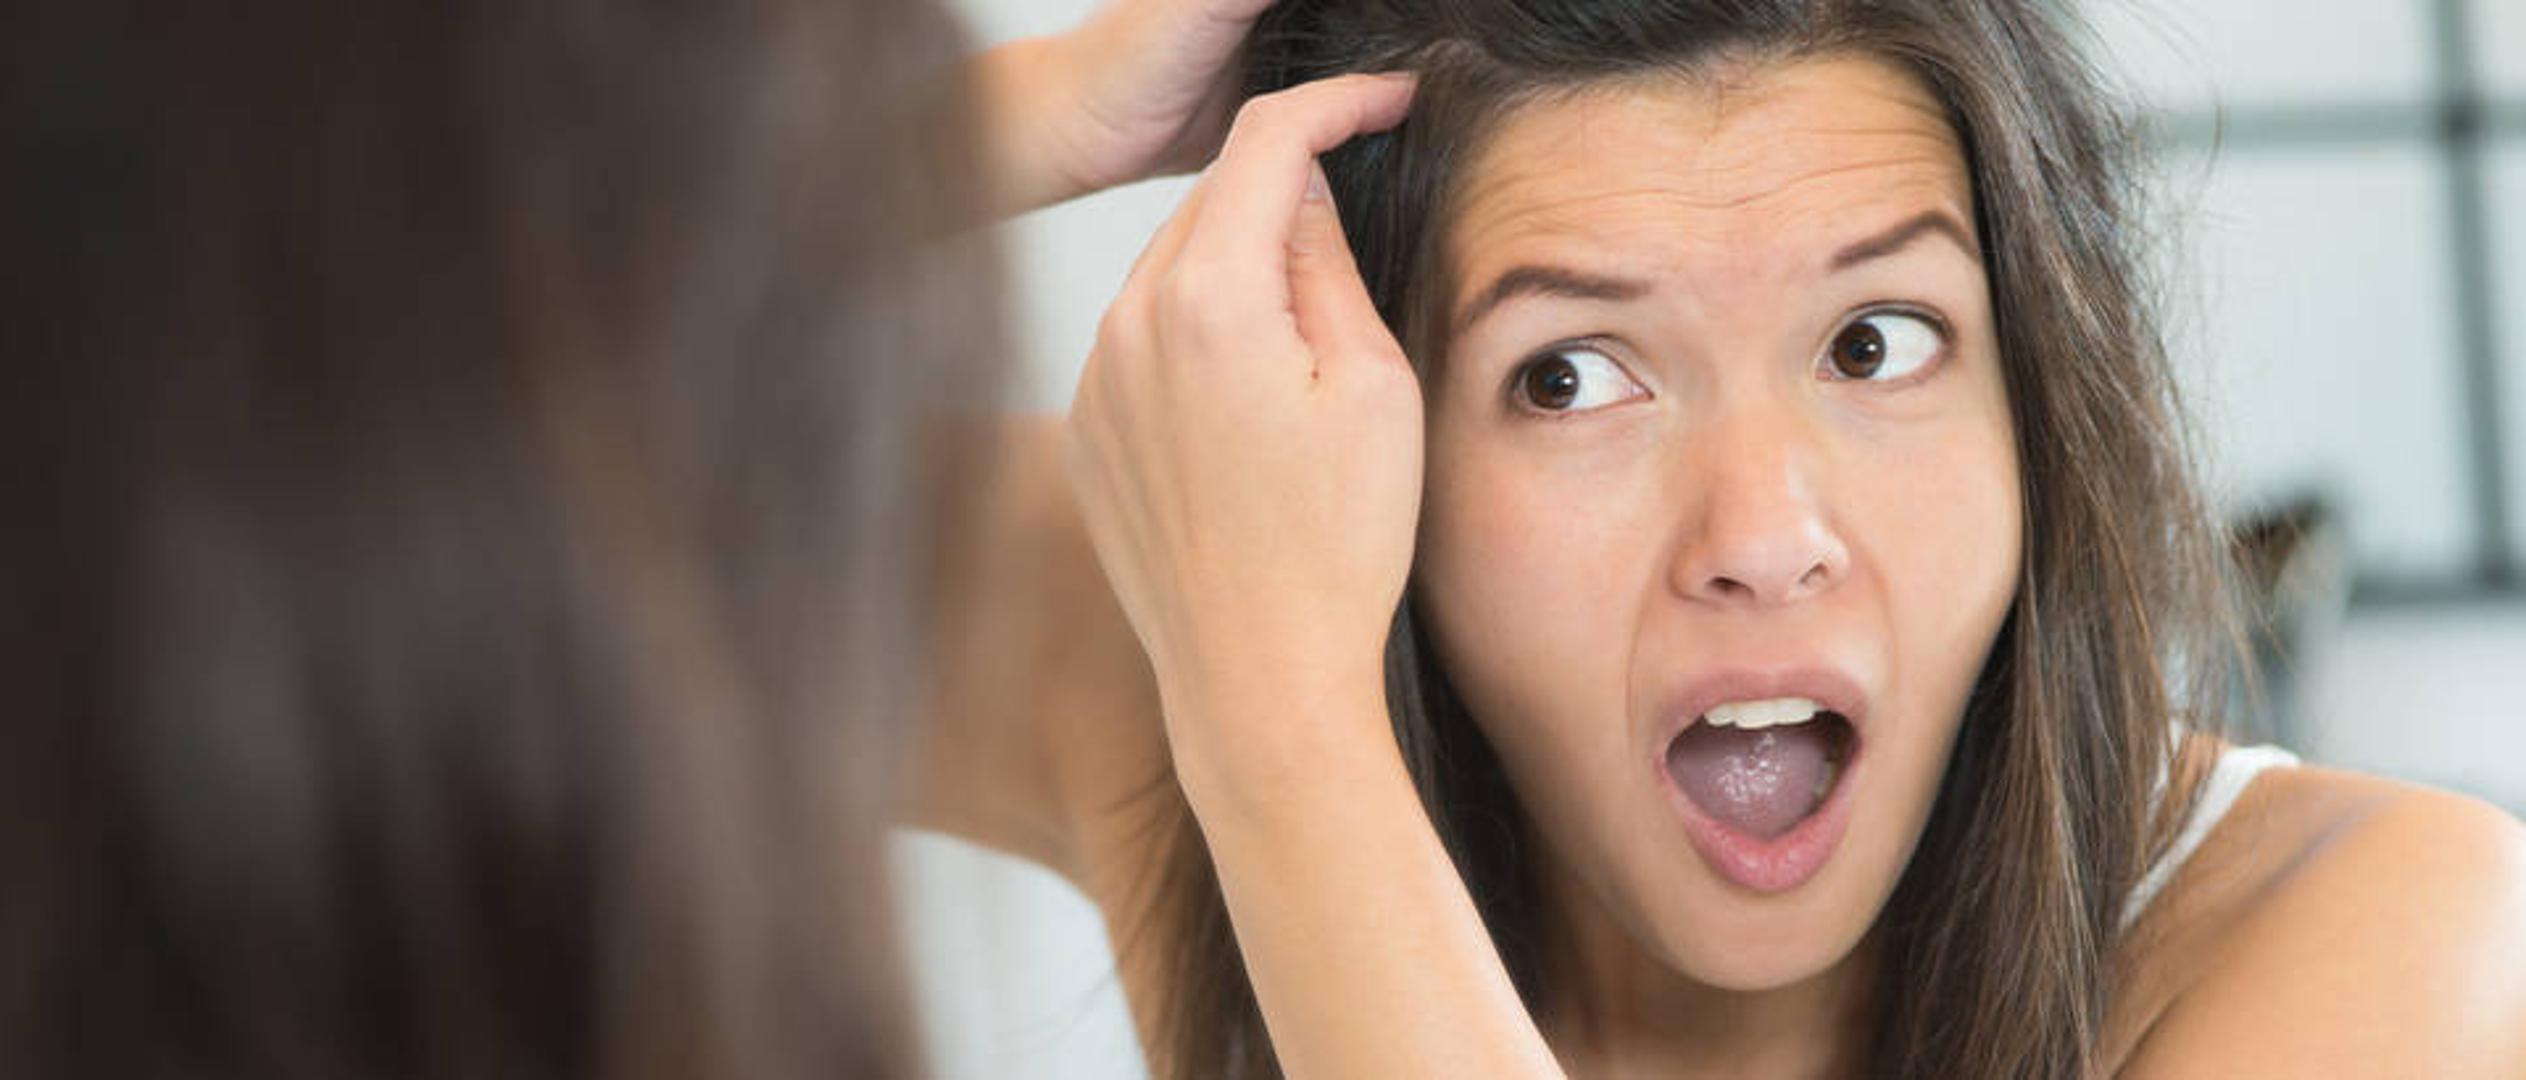 Postoji više razloga zašto nam kosa preuranjeno sijedi, iako je najvažniji čimbenik onaj genetski. 